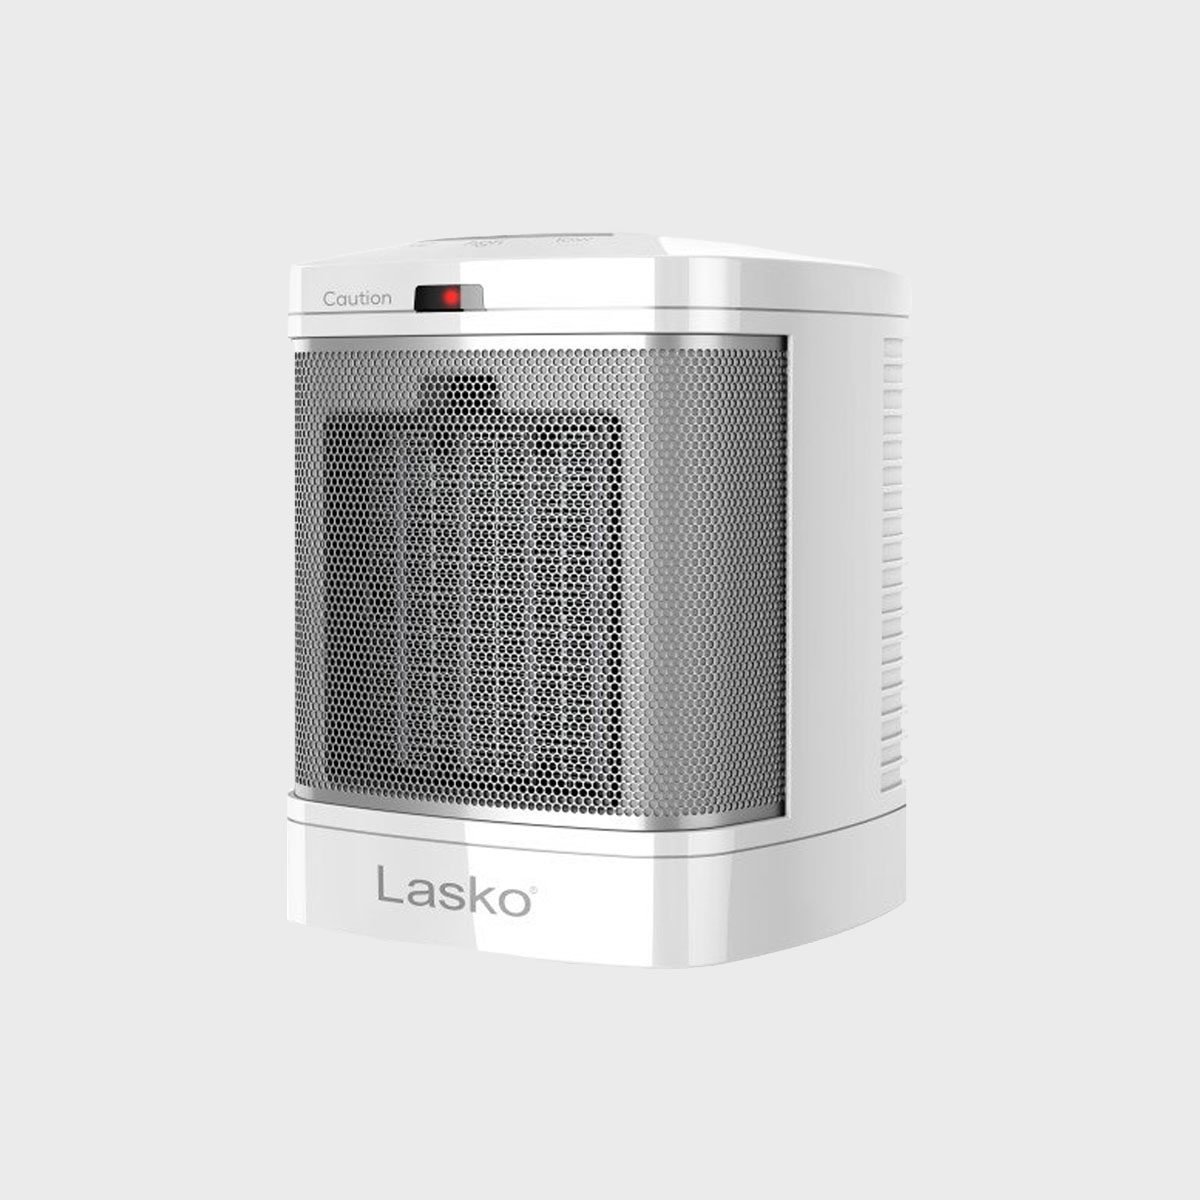 Lasko Bathroom Space Heater